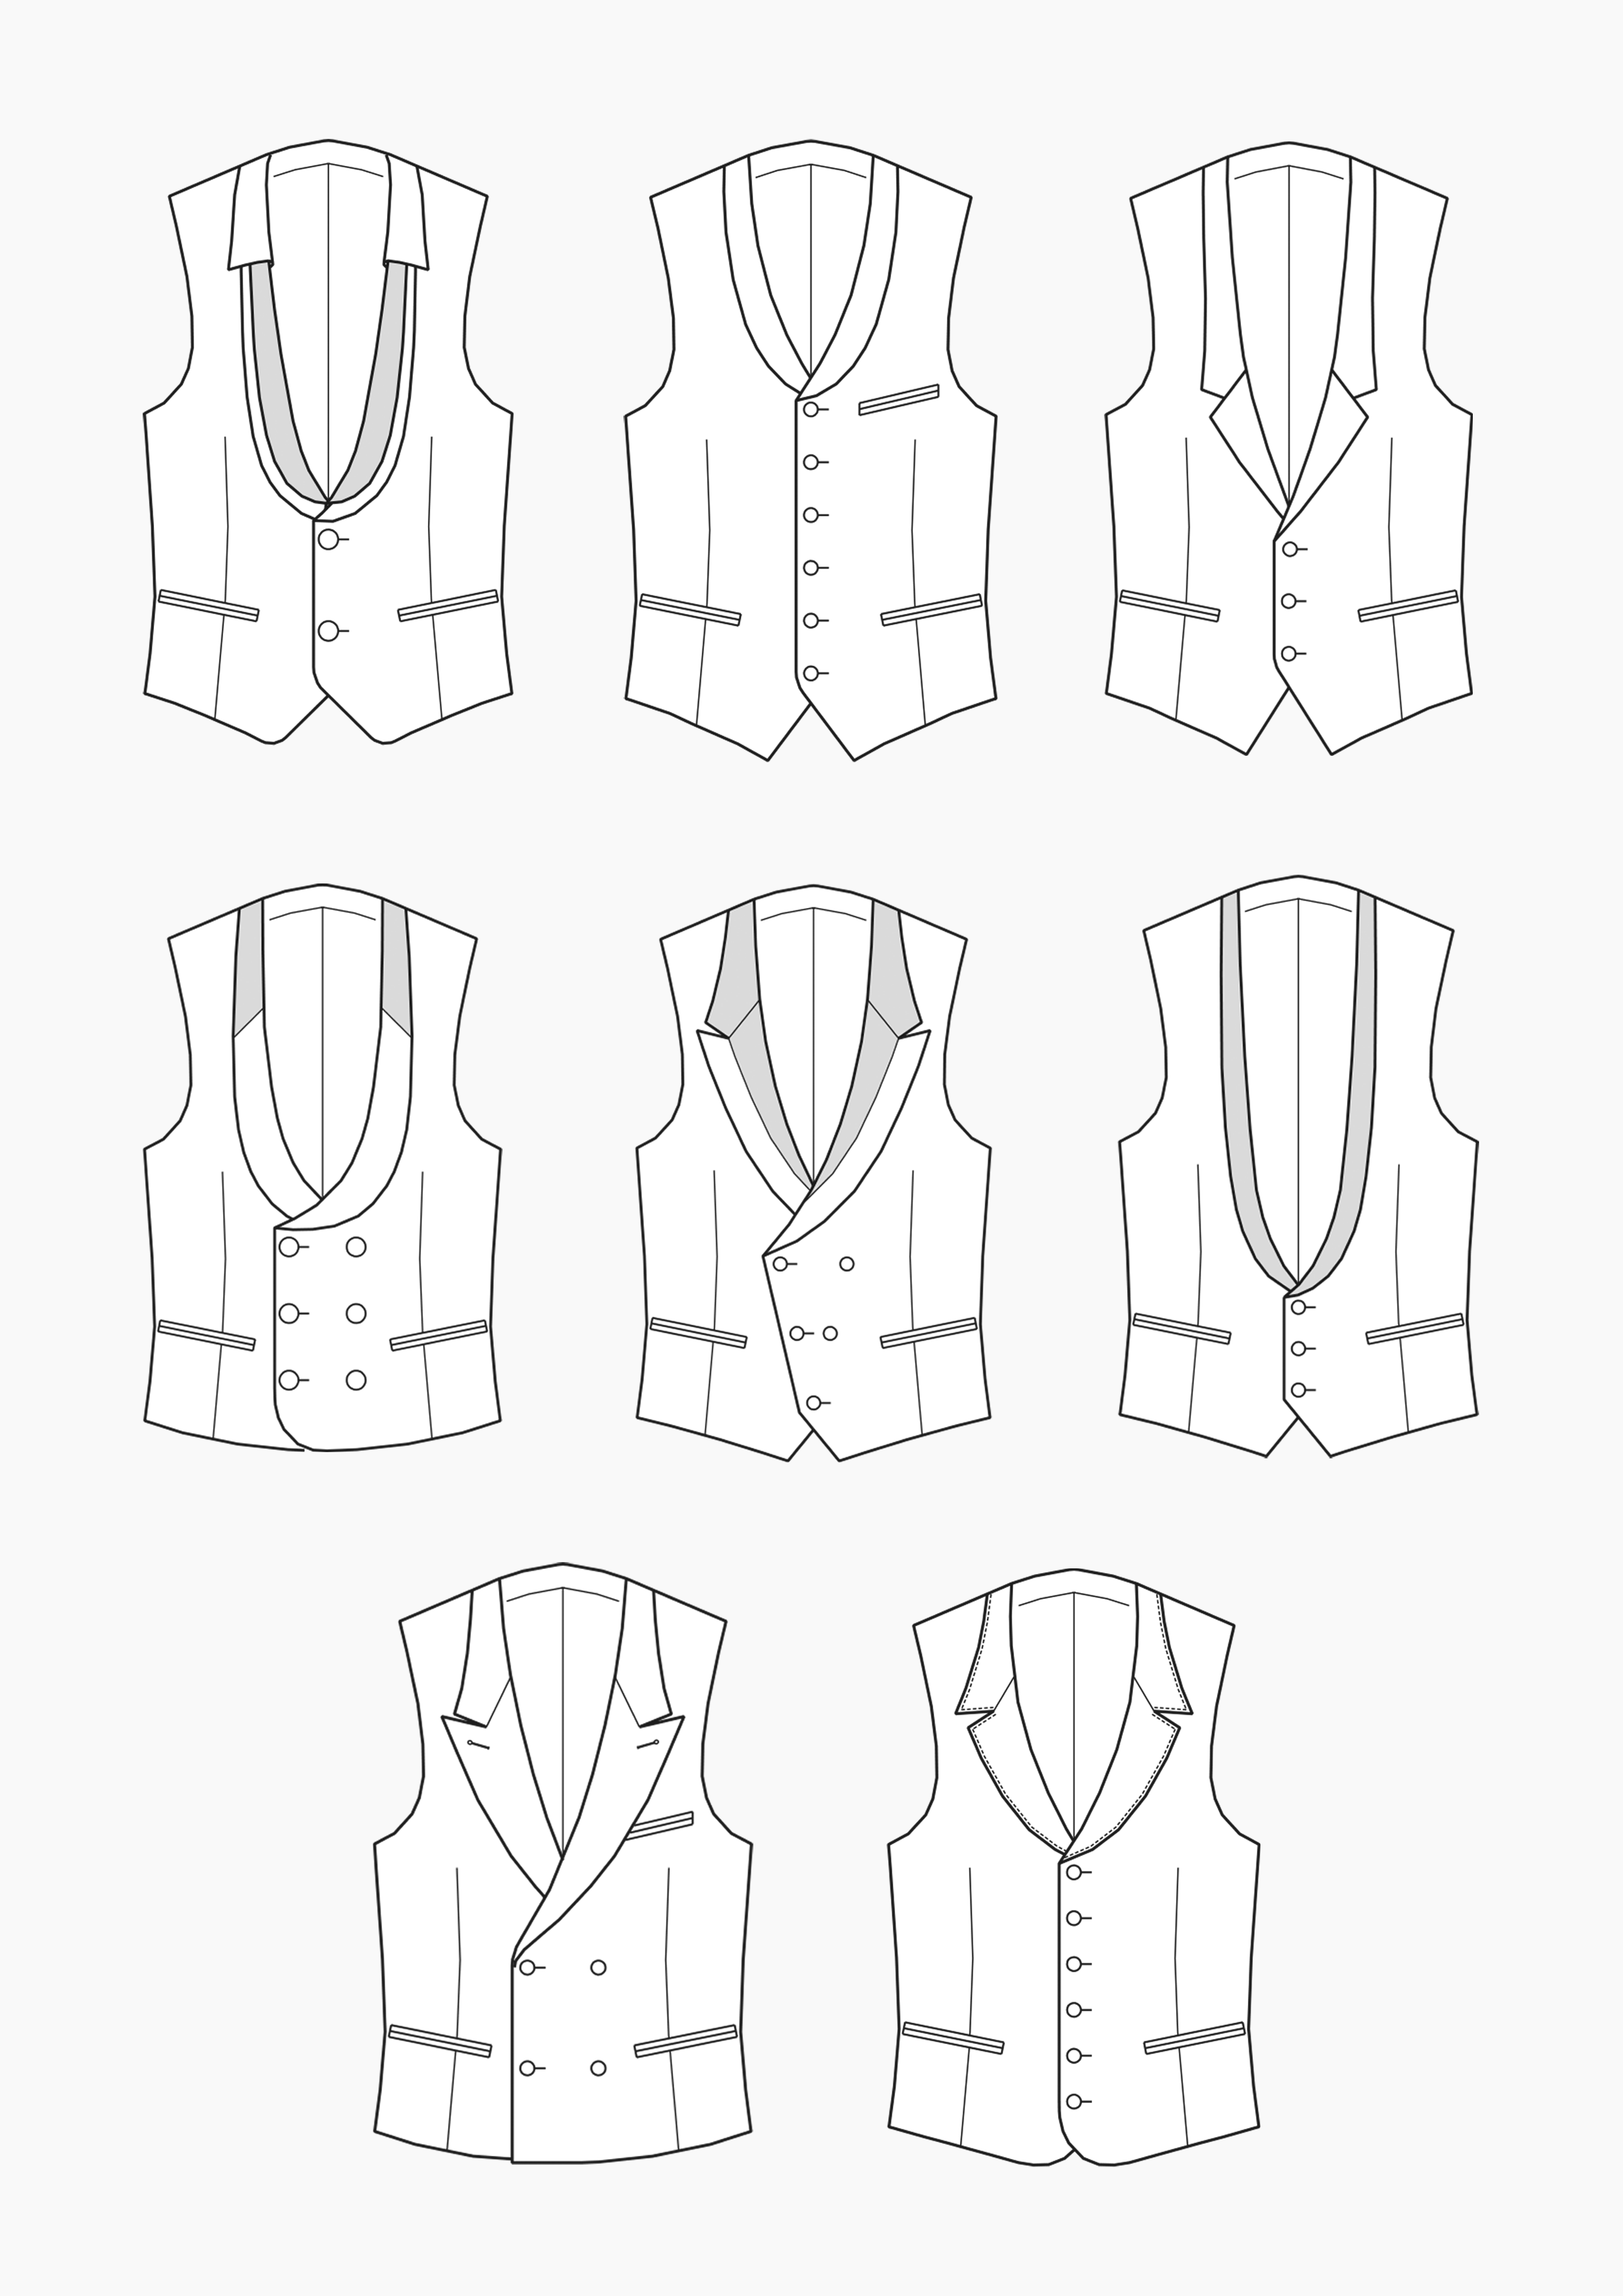 Product: Pattern Making Waistcoats